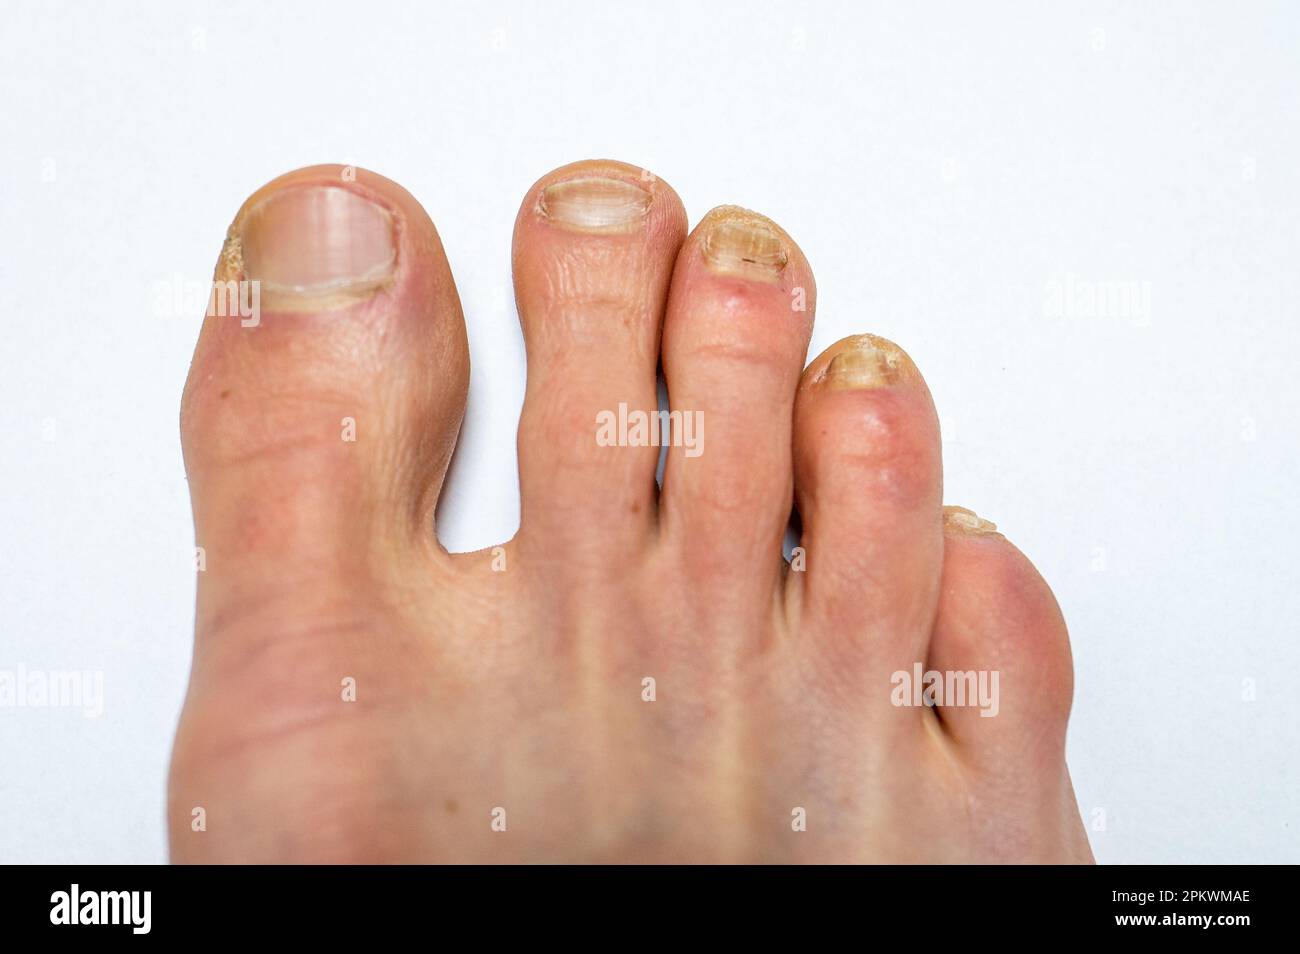 Nahaufnahme eines erwachsenen männlichen Fußes mit drei kleinen Zehen, die mit Nagelmykose (Onychomykose) infiziert sind. Stockfoto